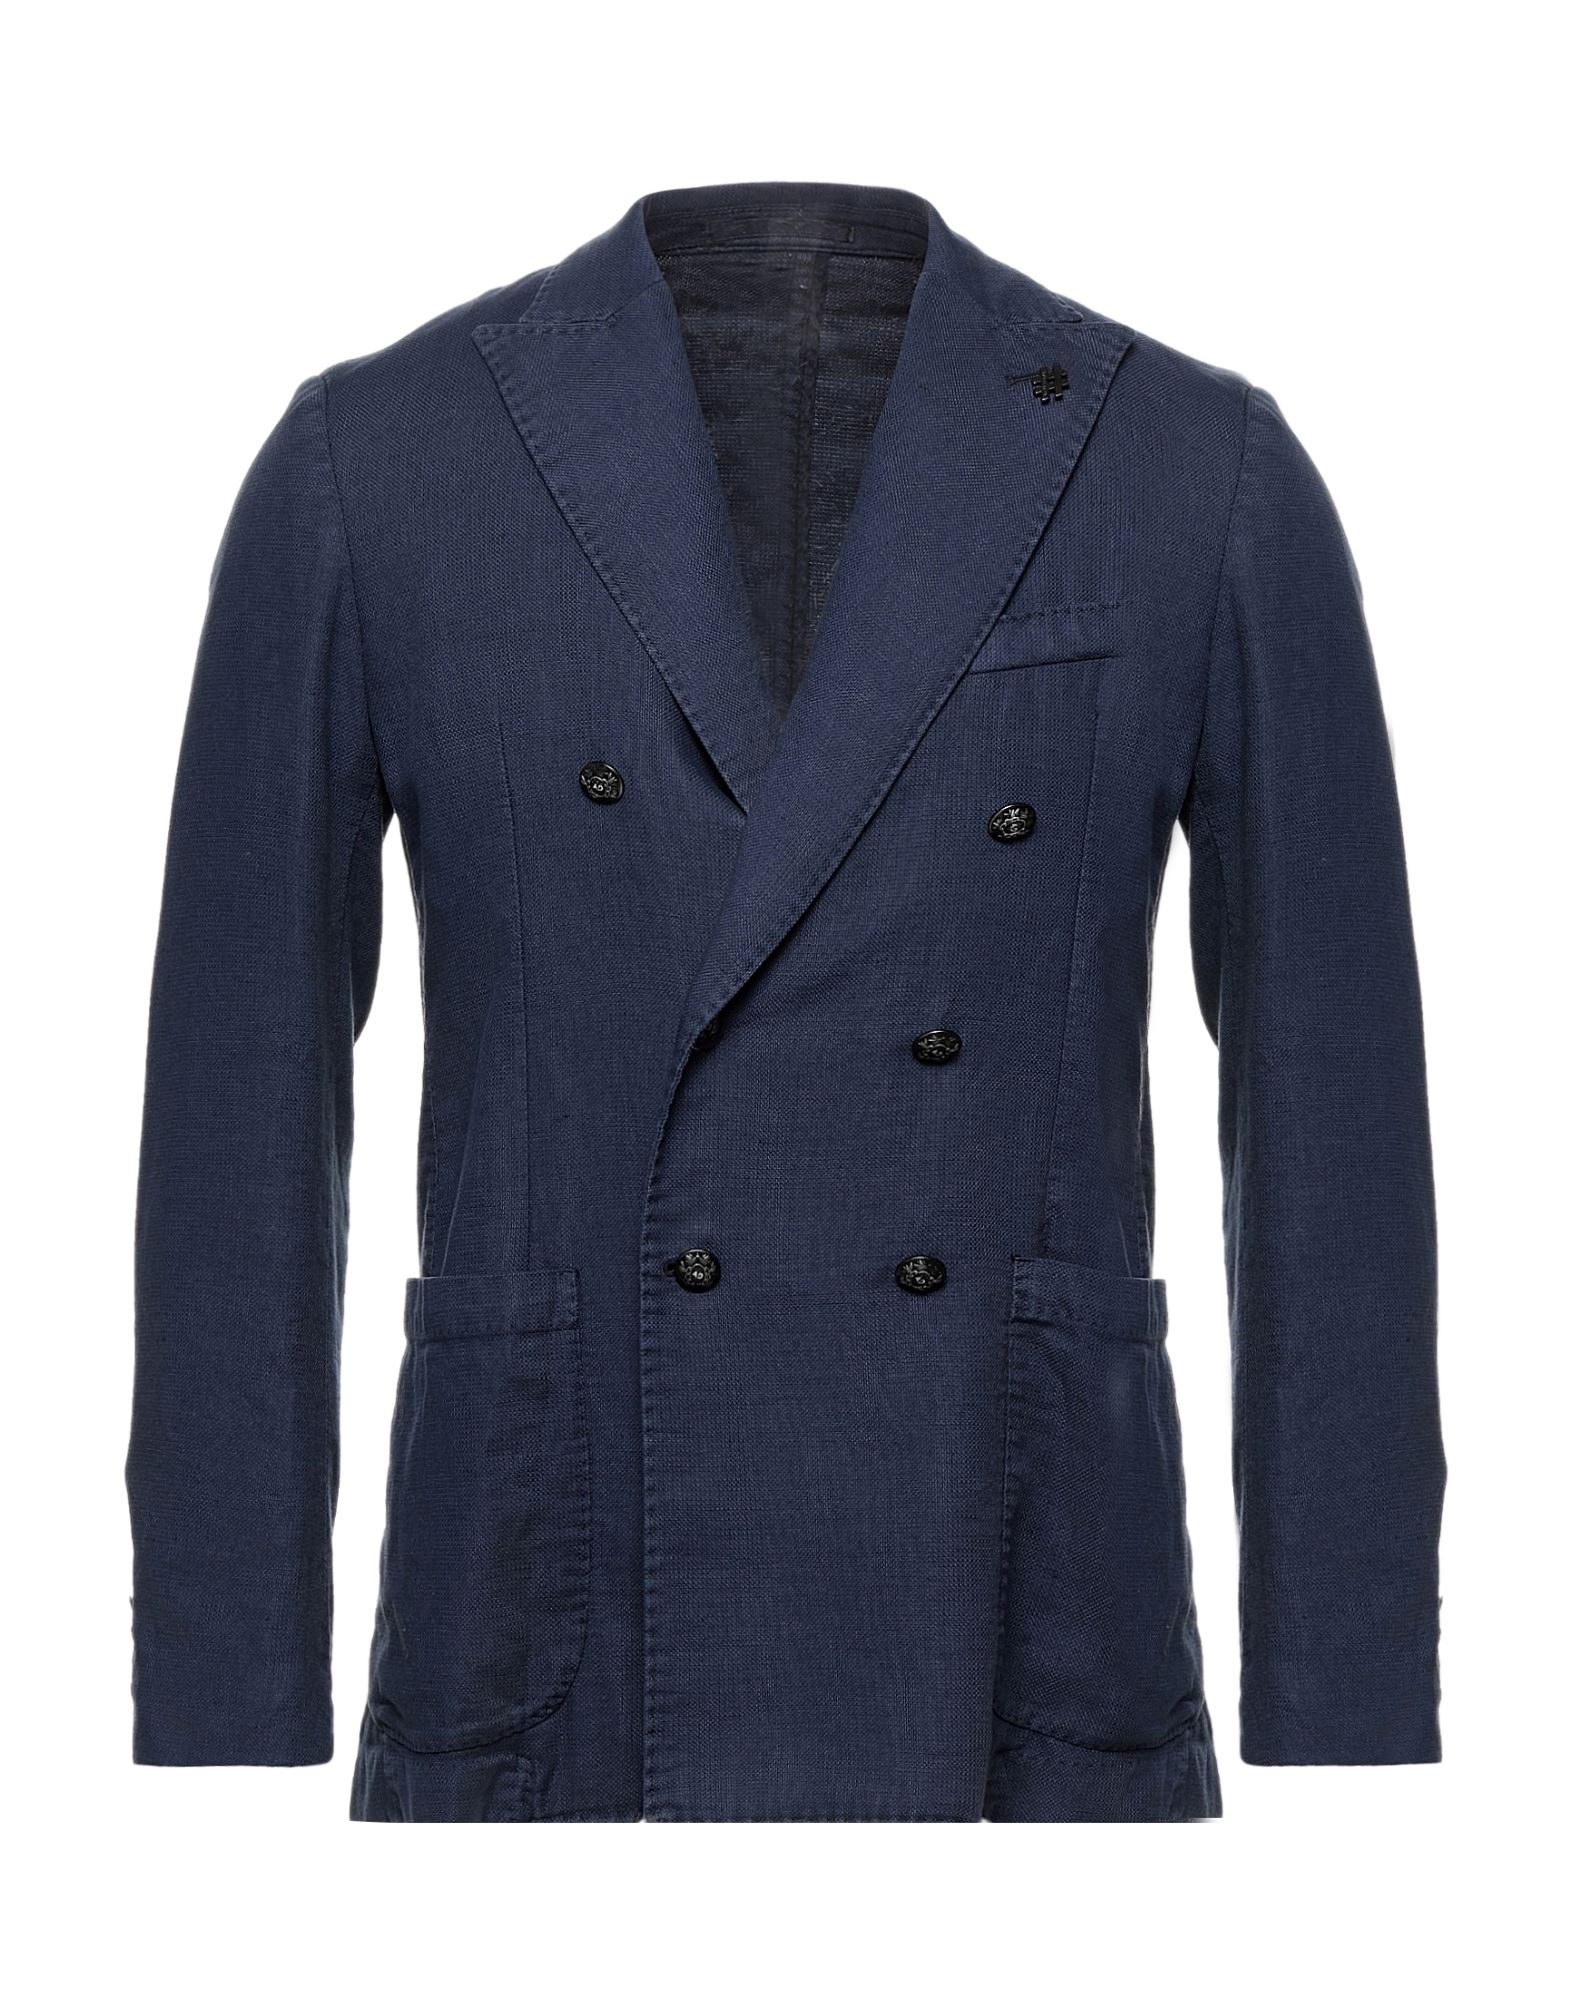 Alessandro Dell'acqua Man Suit Jacket Blue Size 42 Cotton, Linen, Elastane